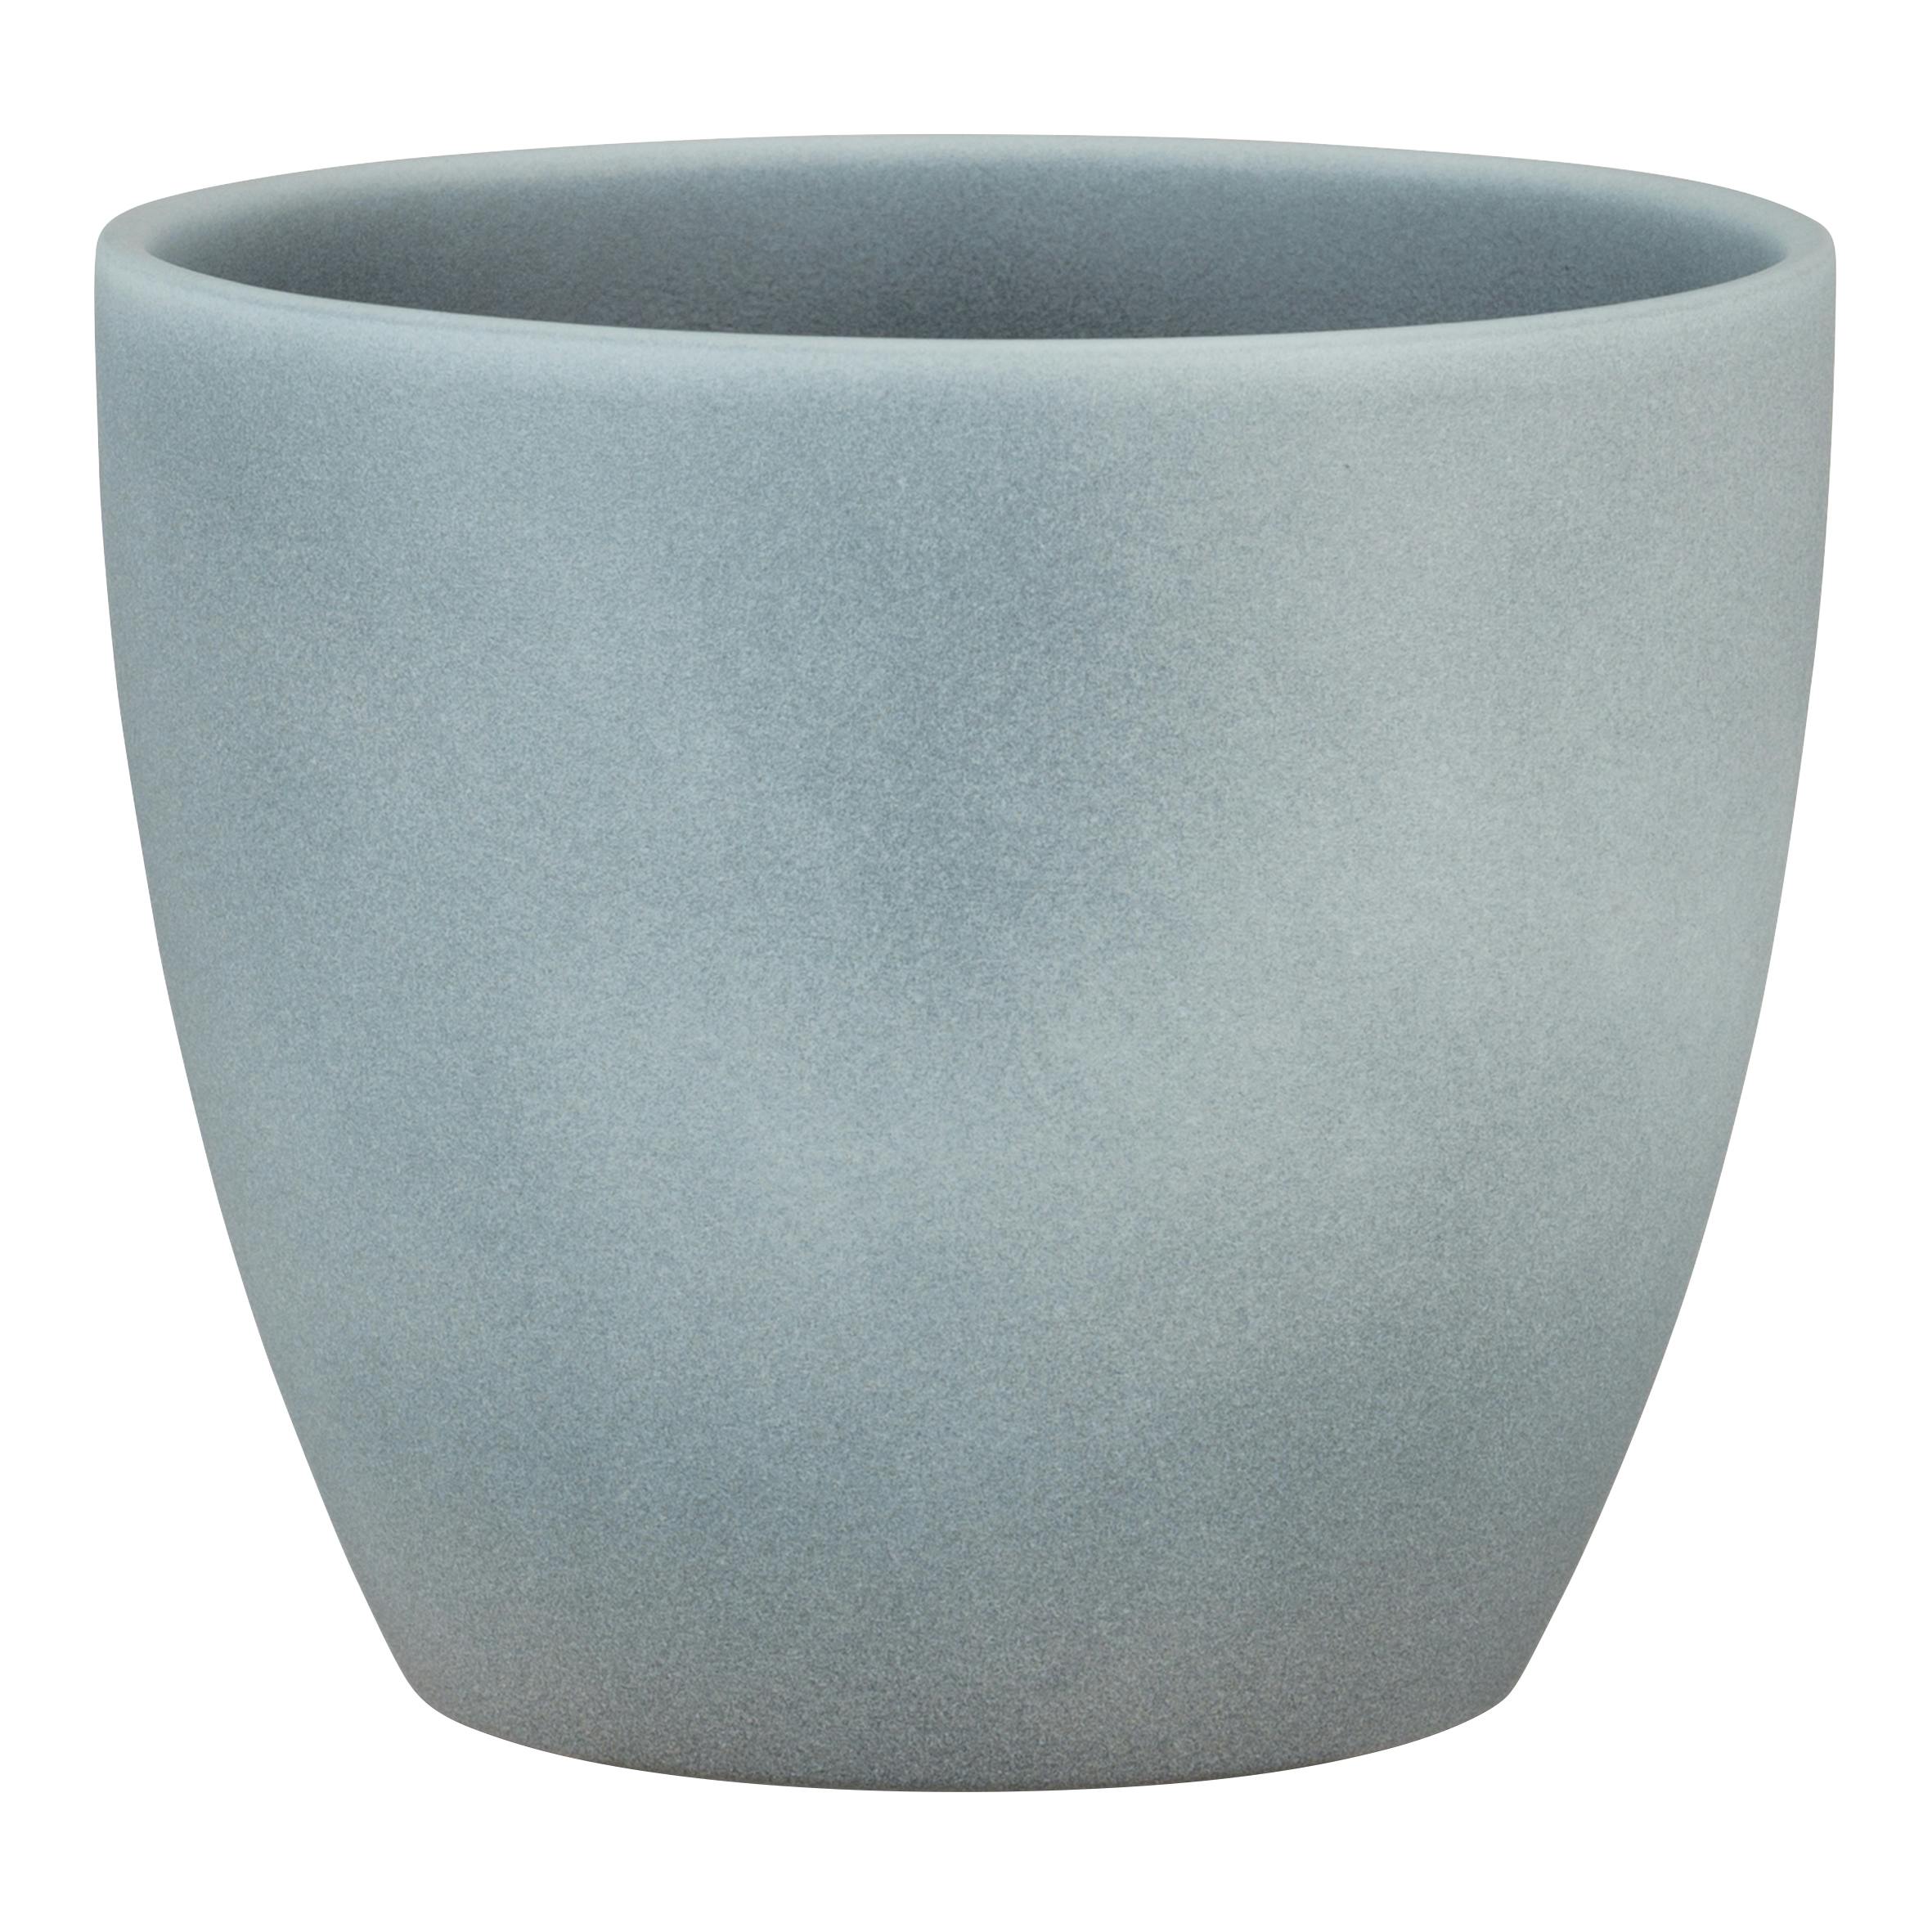 Scheurich Stone, cm | Keramik, Durchmesser, Marktplatz hoch, METRO Grey Blumentopf aus 19.5 5.5 22 cm Farbe: Stone, Vol. l